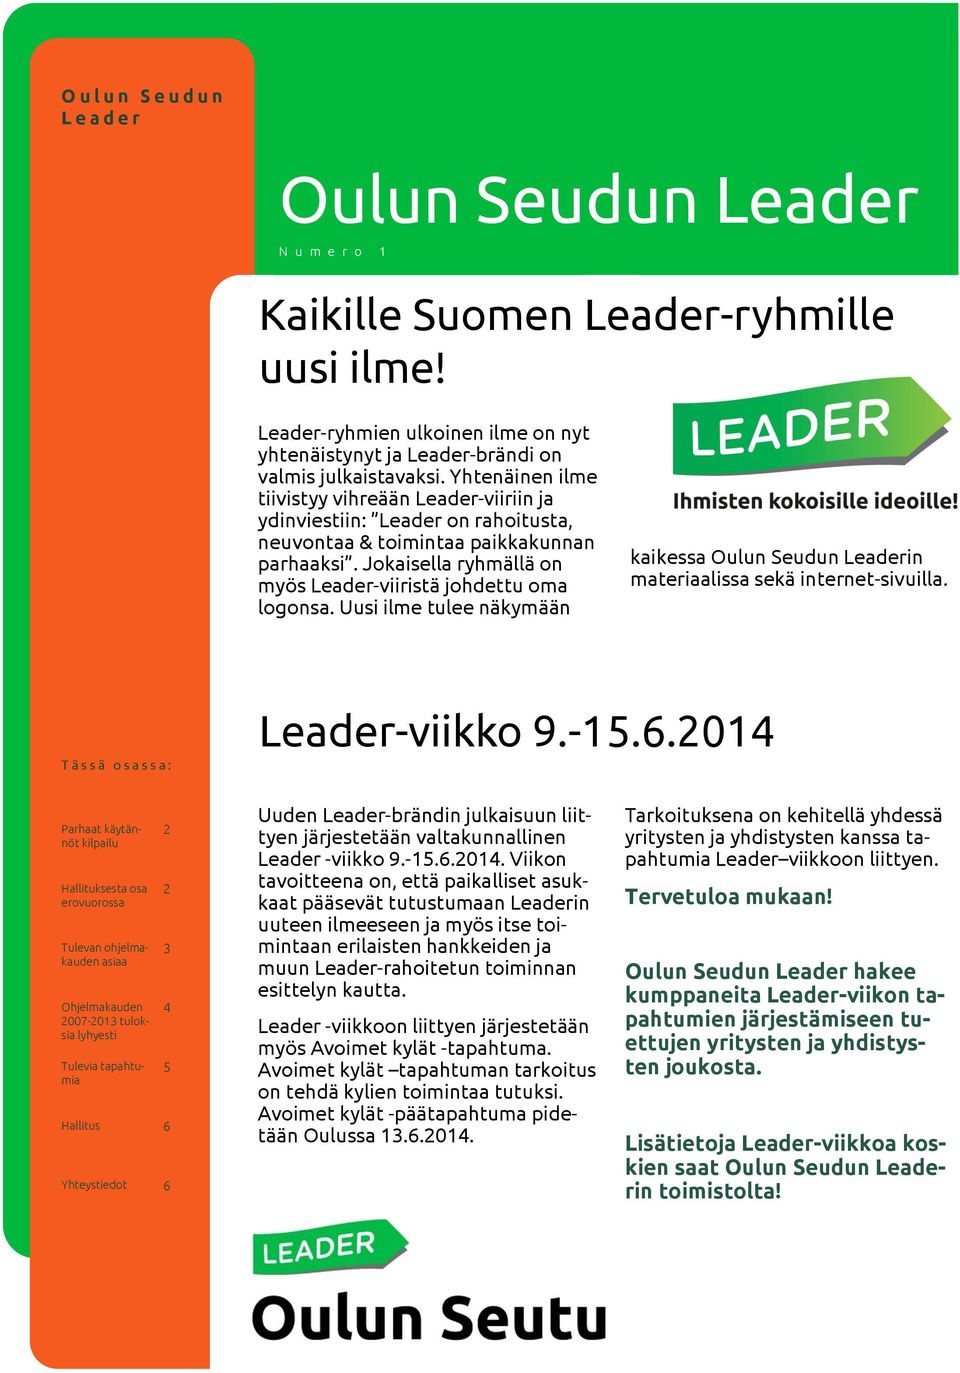 Yhtenäinen ilme tiivistyy vihreään Leader-viiriin ja ydinviestiin: Leader on rahoitusta, neuvontaa & toimintaa paikkakunnan parhaaksi. Jokaisella ryhmällä on myös Leader-viiristä johdettu oma logonsa.